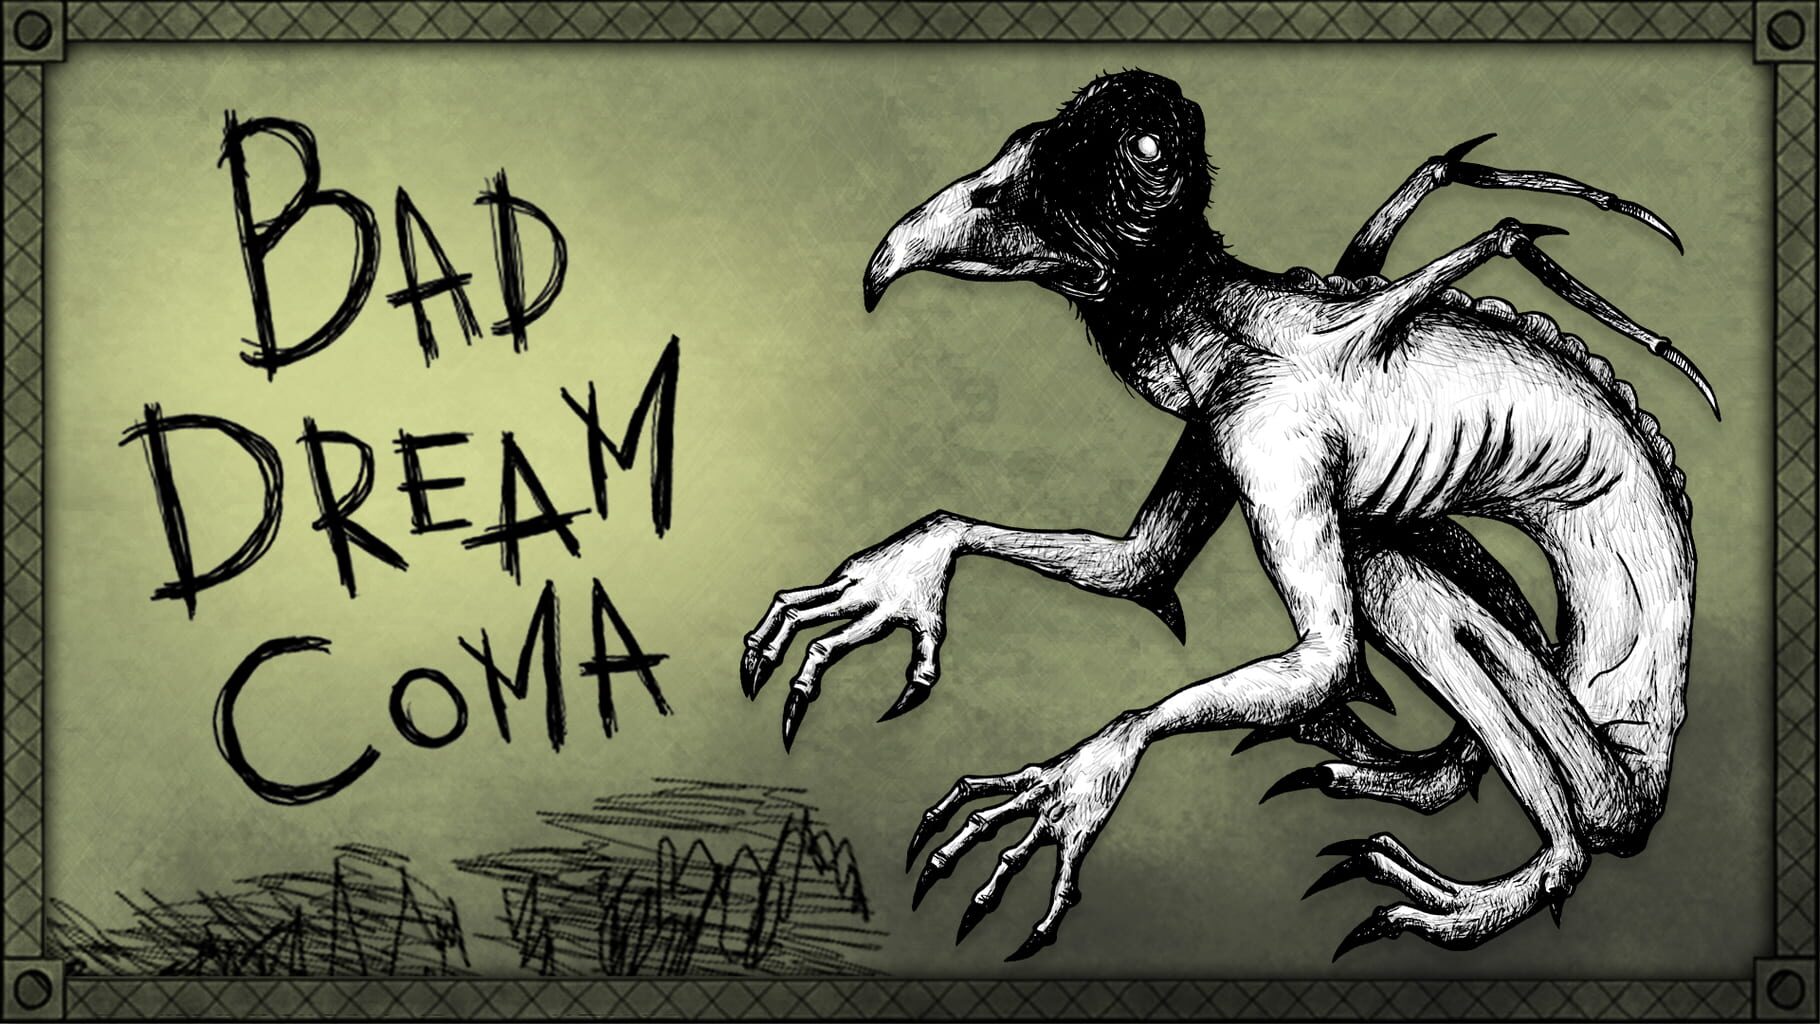 Bad Dream: Coma artwork